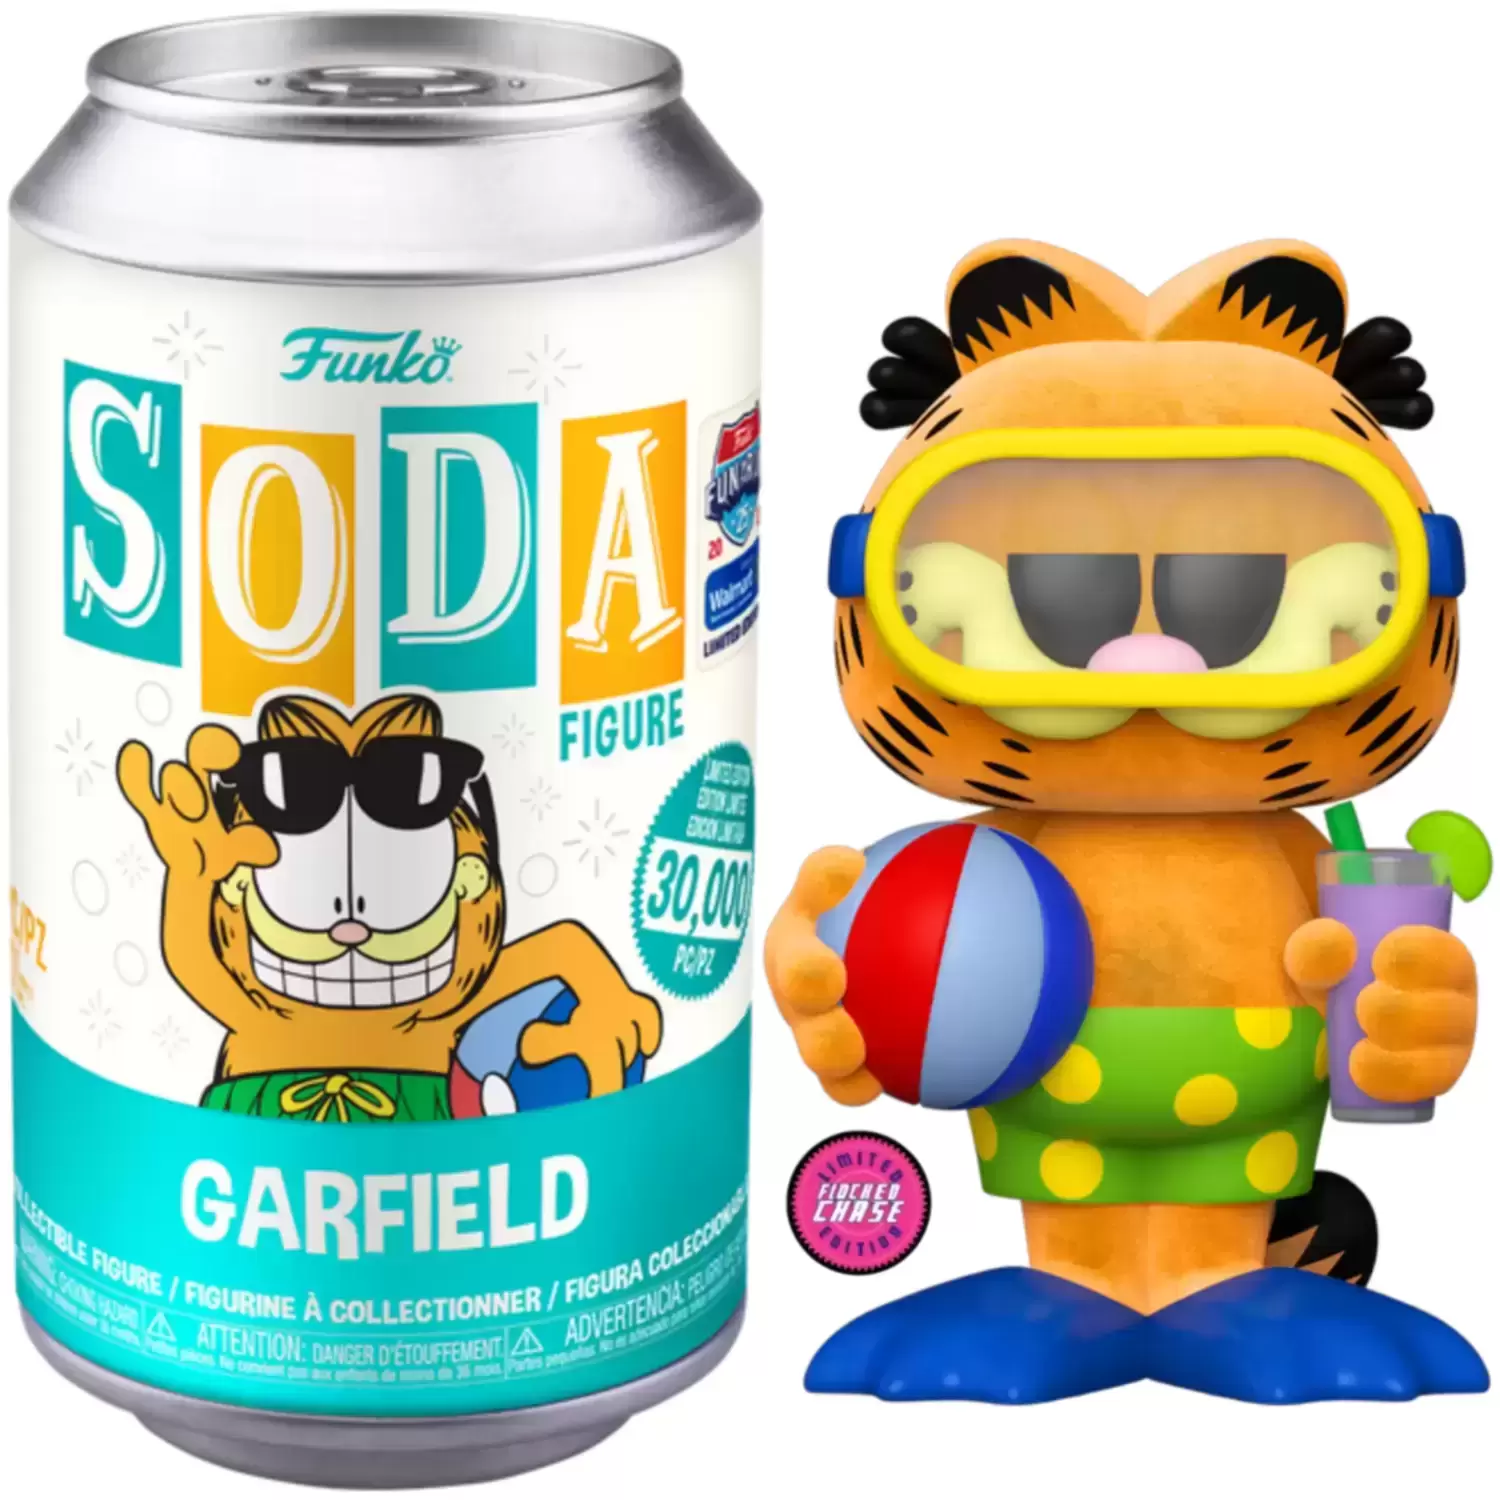 Vinyl Soda! - Garfield Flocked